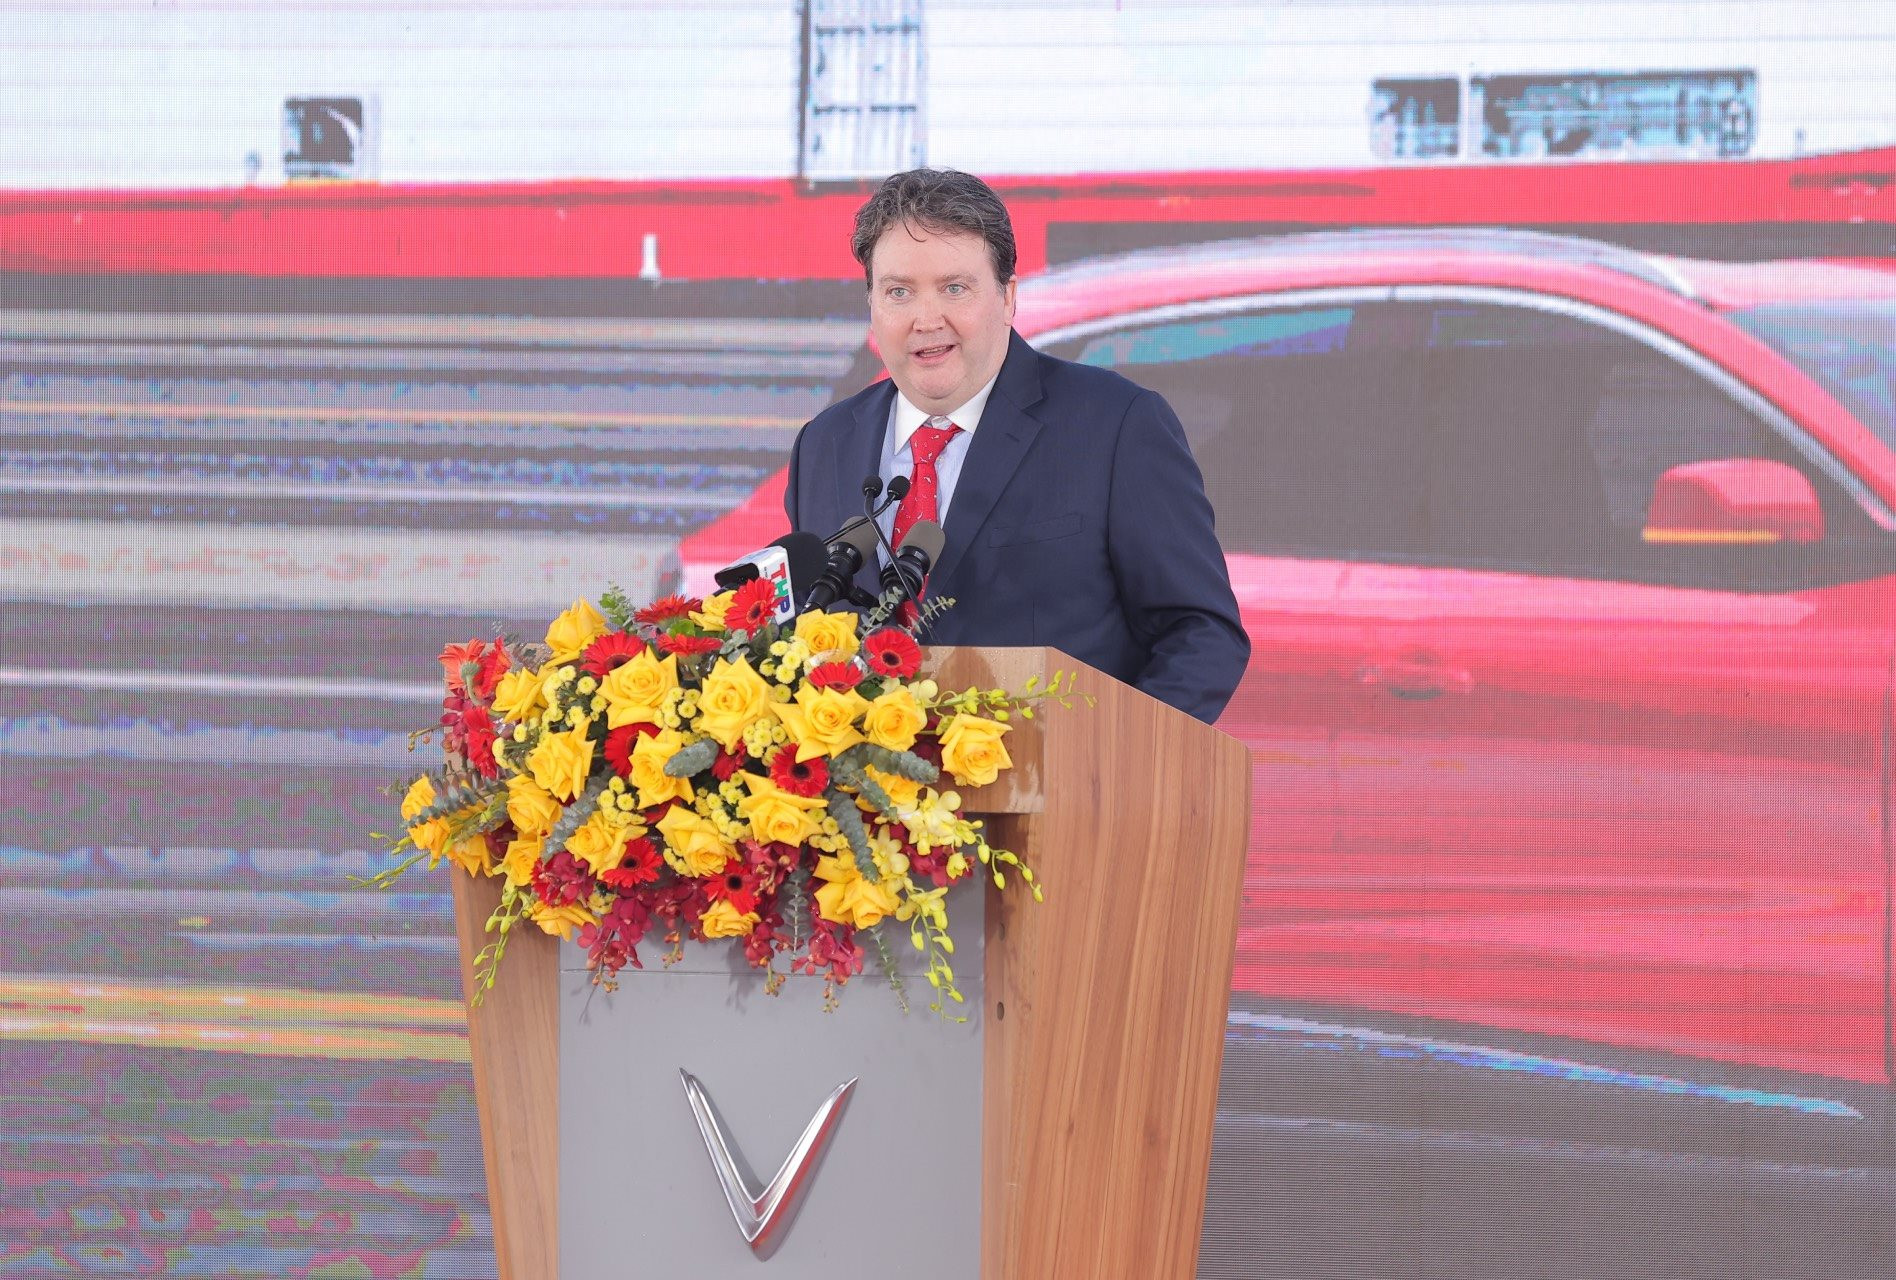 Đại sứ Mỹ tại Việt Nam nói gì về sự kiện lịch sử VinFast xuất khẩu ô tô điện ra thế giới? - Ảnh 1.